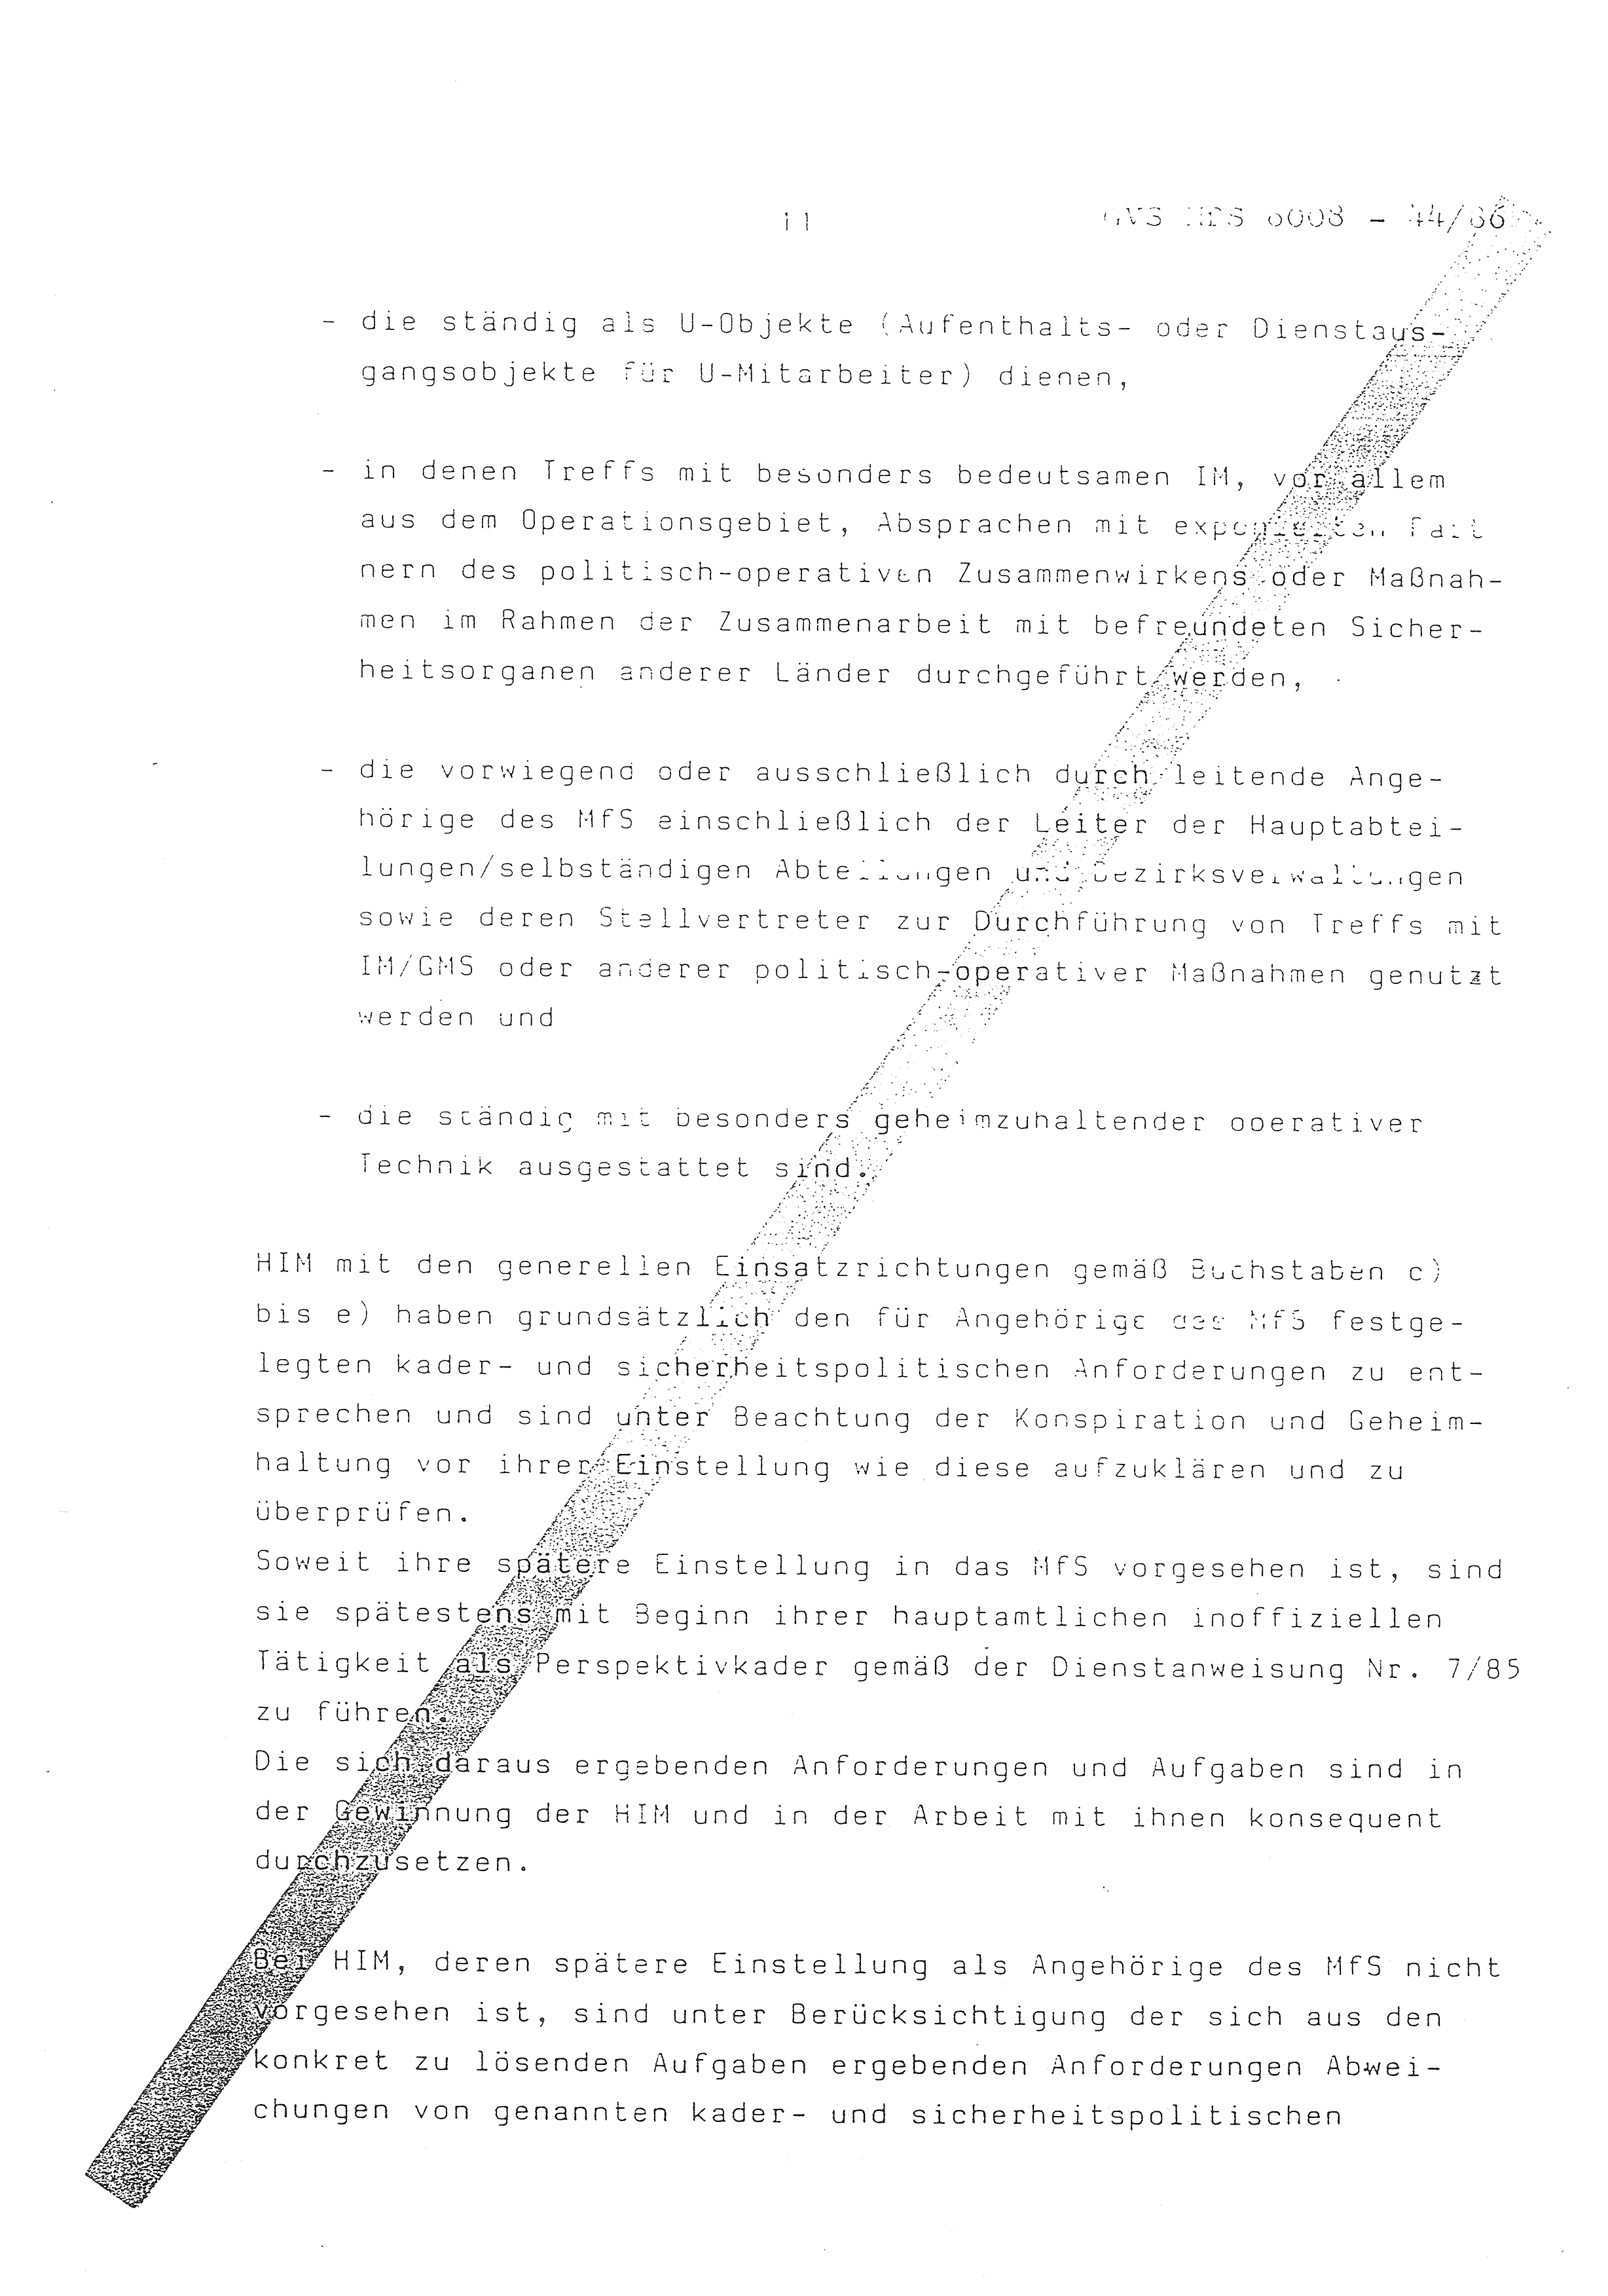 2. Durchführungsbestimmung zur Richtlinie 1/79 über die Arbeit mit hauptamtlichen Mitarbeitern des MfS (HIM), Deutsche Demokratische Republik (DDR), Ministerium für Staatssicherheit (MfS), Der Minister (Mielke), Geheime Verschlußsache (GVS) ooo8-44/86, Berlin 1986, Seite 11 (2. DB RL 1/79 DDR MfS Min. GVS ooo8-44/86 1986, S. 11)